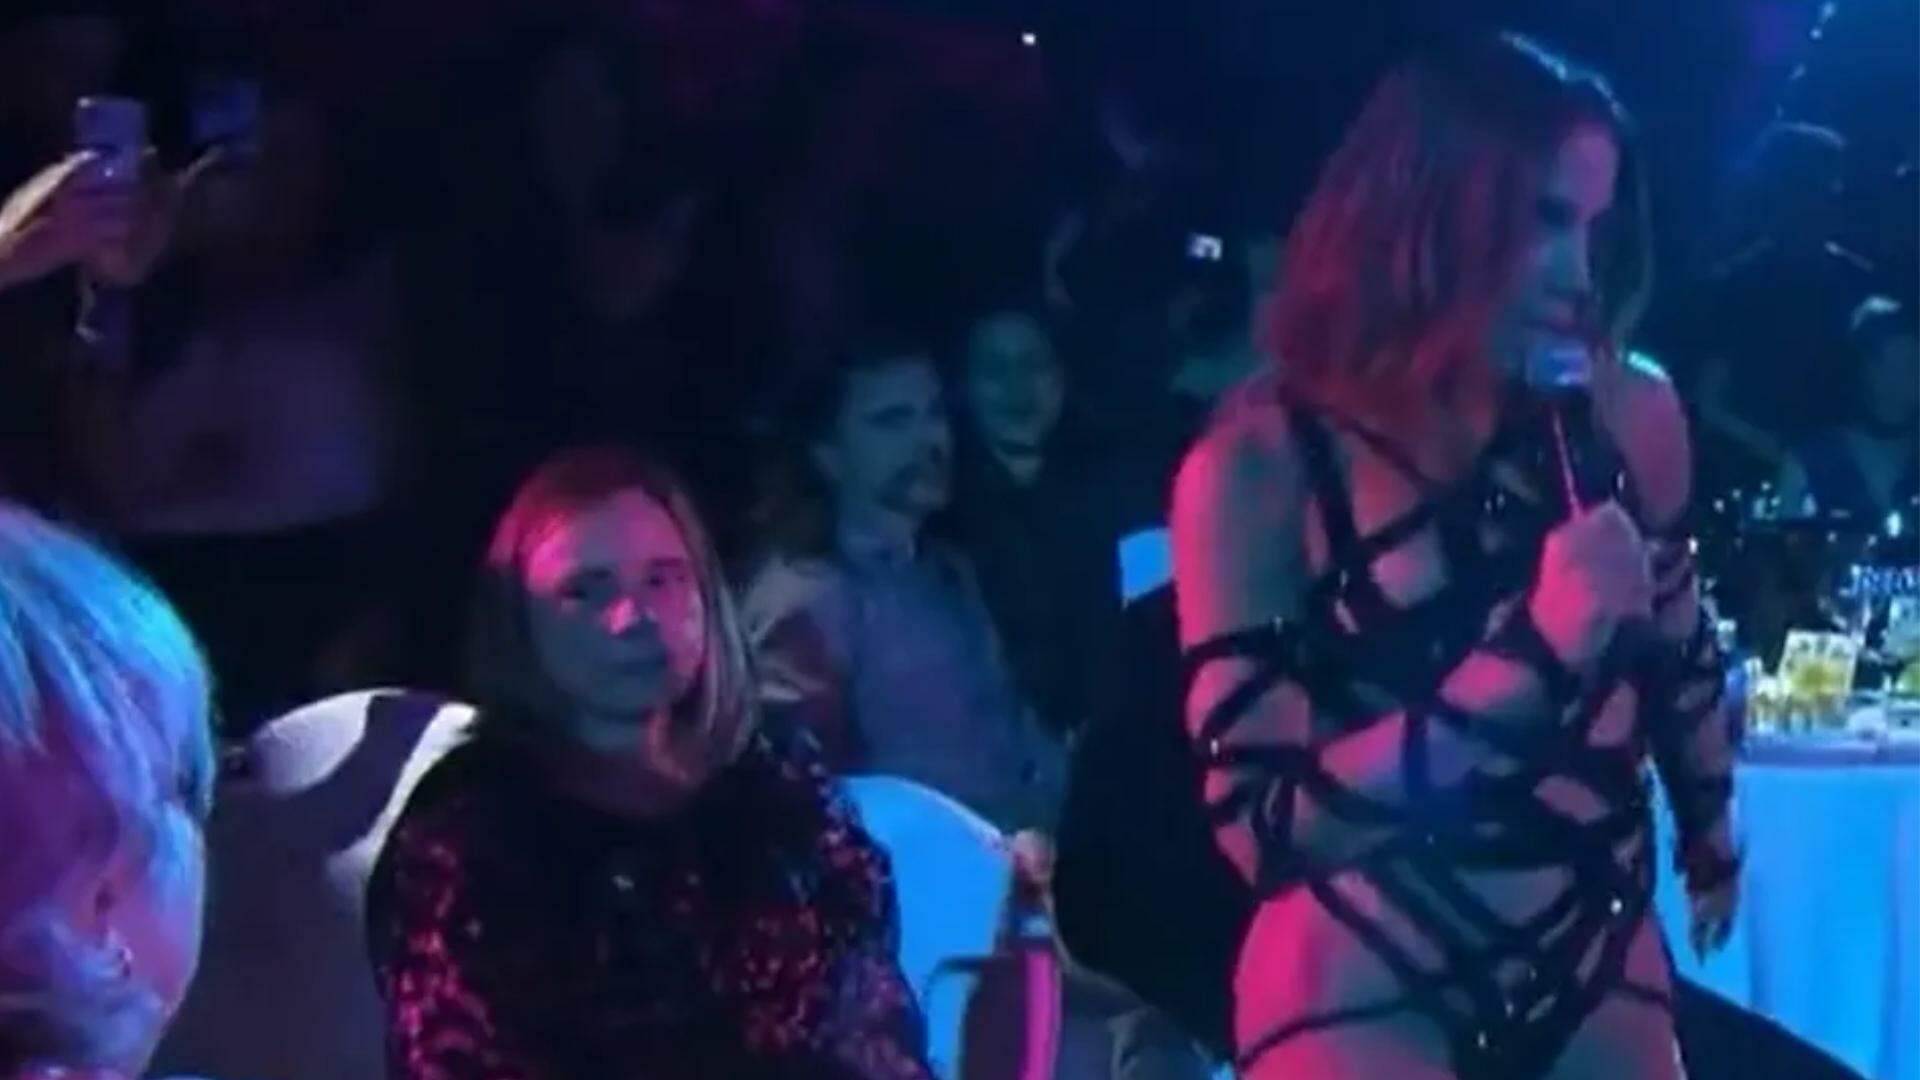 Mulher dá chega pra lá em Anitta durante apresentação na Espanha e vídeo viraliza: “Não gostou”